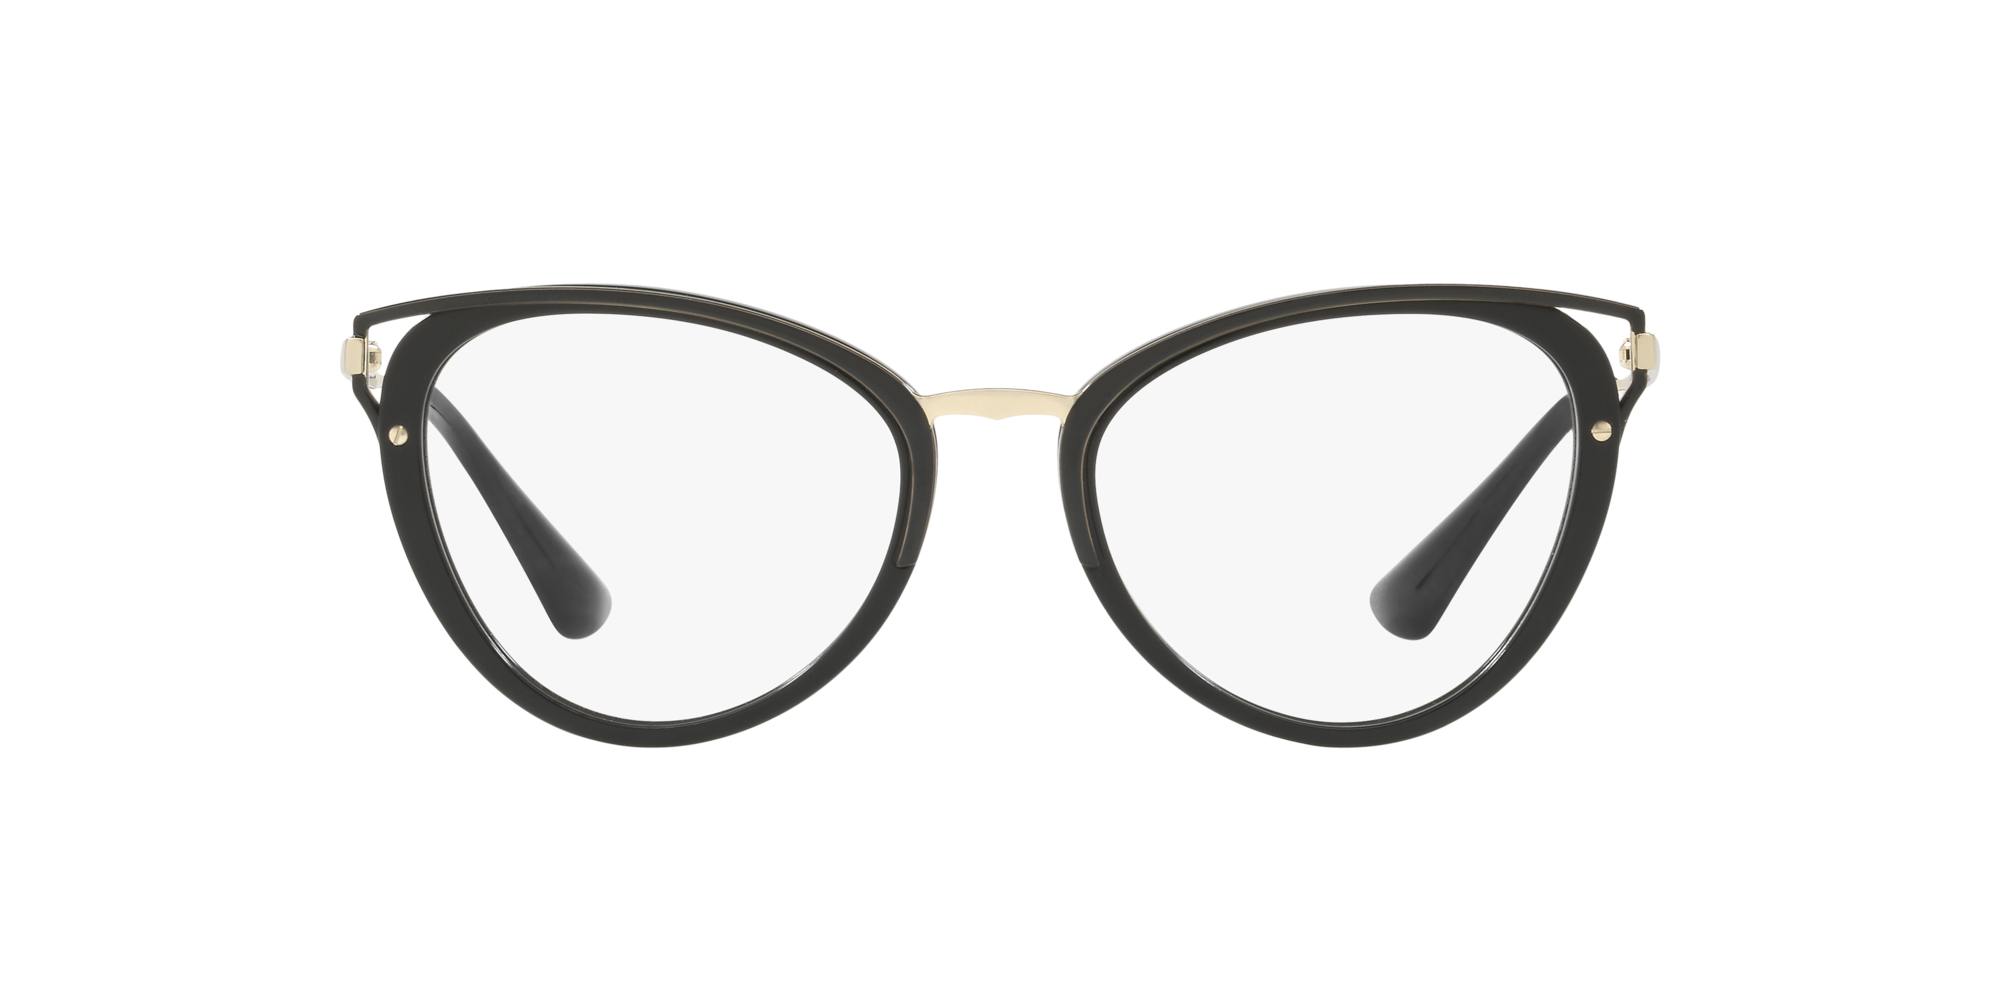 Prada 0PR-53UV in Black Glasses | OPSM